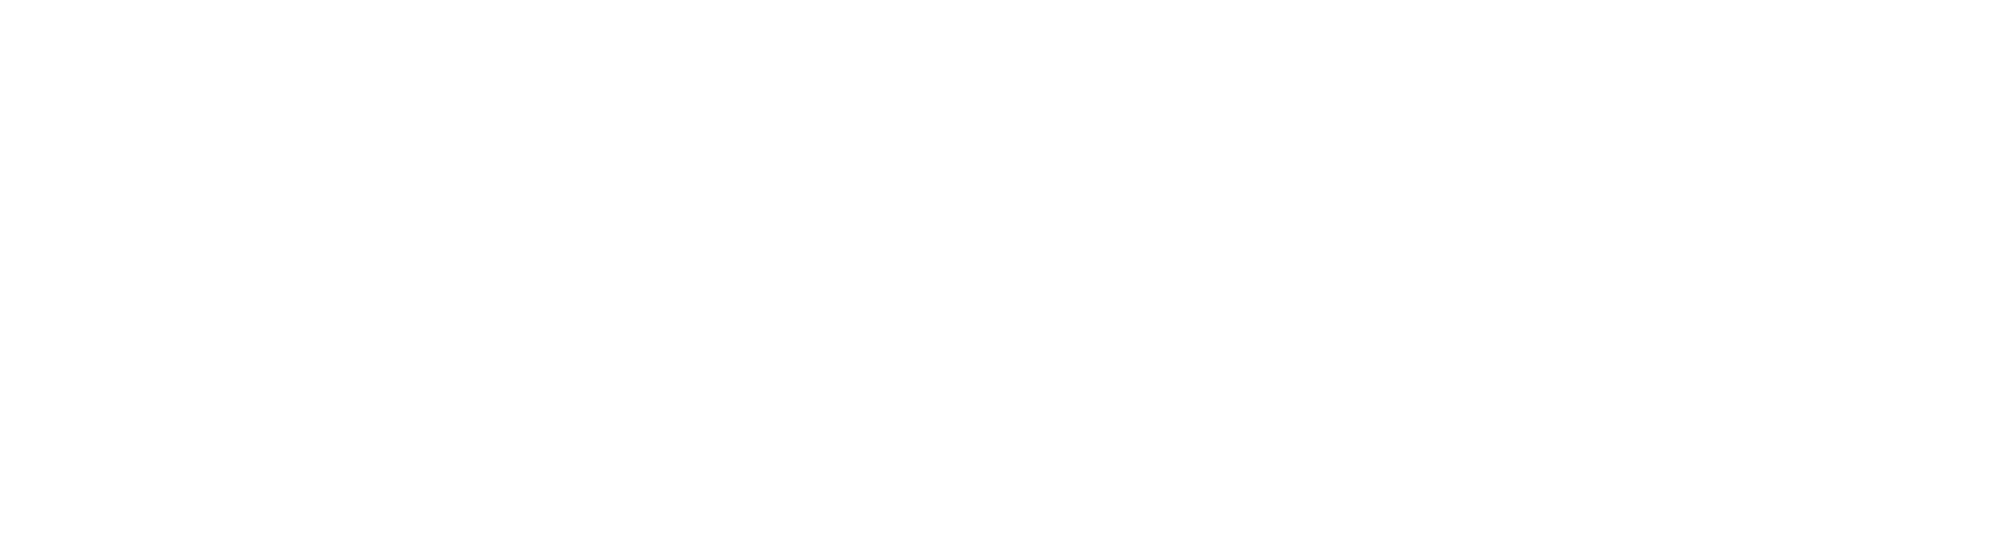 Being Wood Worker